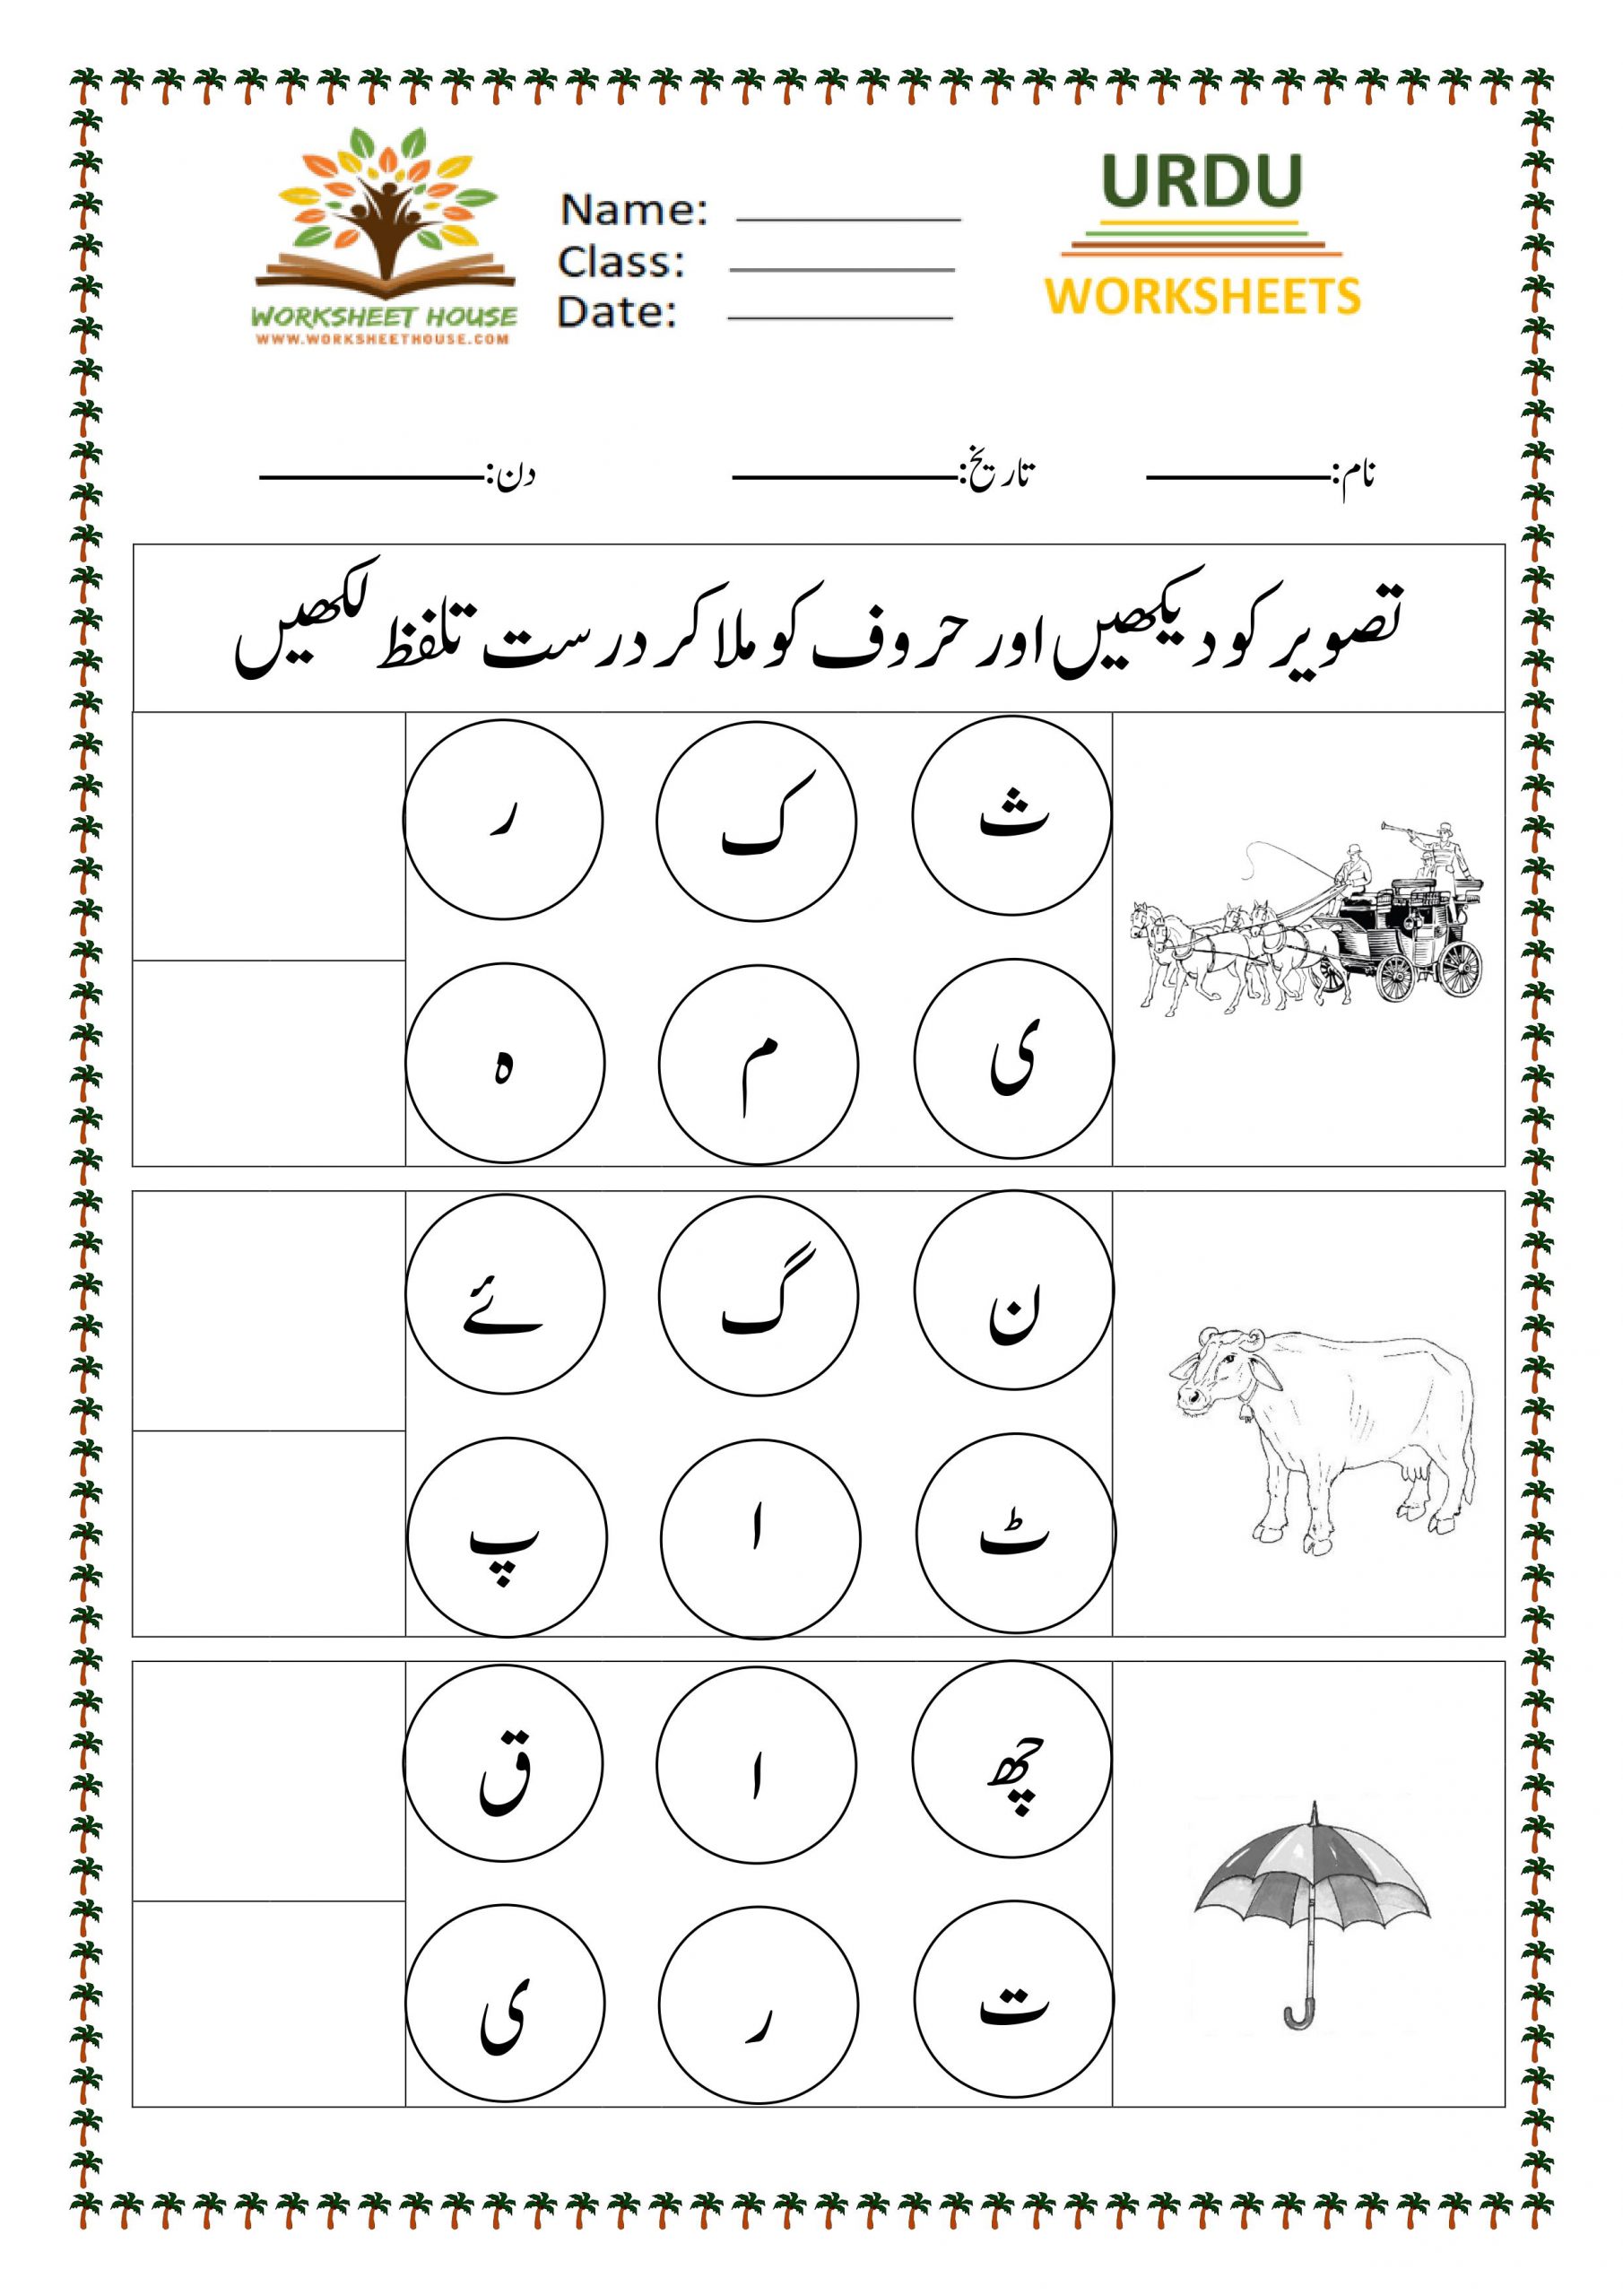 Urdu worksheets for alphabet